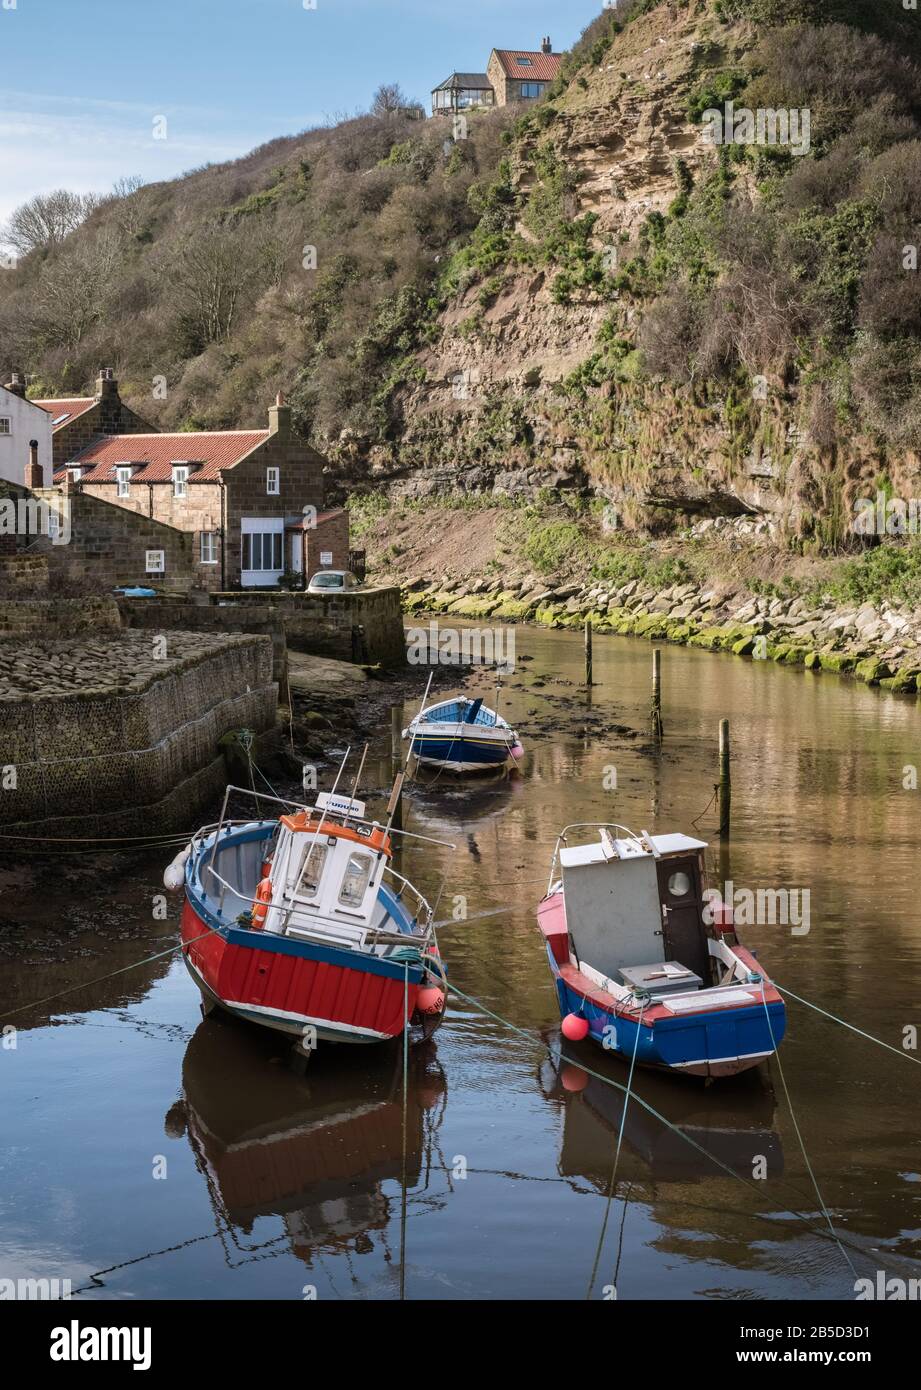 Tradicional puerto de pueblo pesquero con barcos de vela en la marea alta, Staithes, la costa de Yorkshire del Norte, Inglaterra, Reino Unido Foto de stock